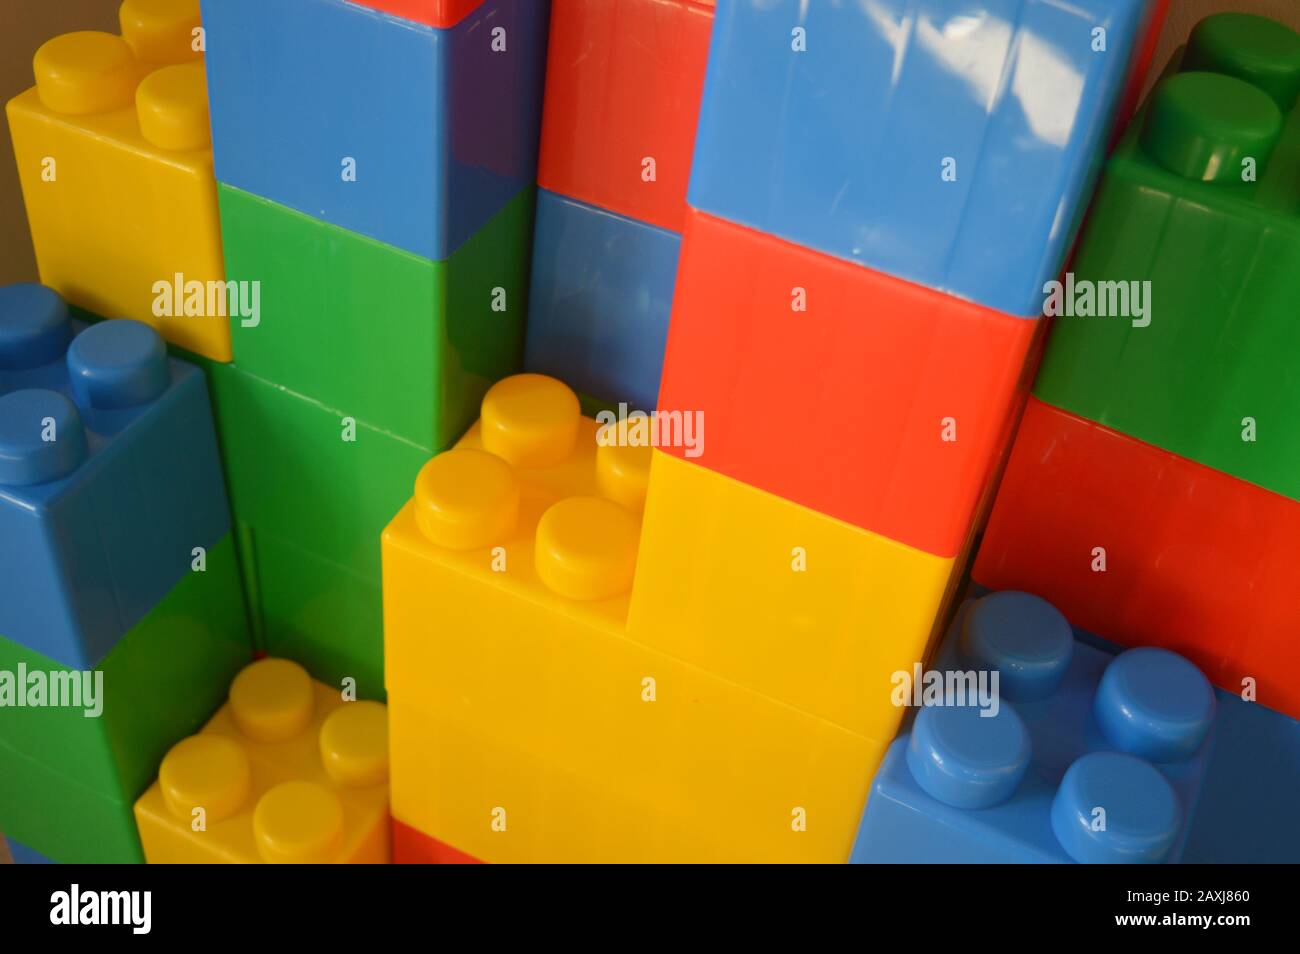 Wader bricks - Large Lego Stock Photo